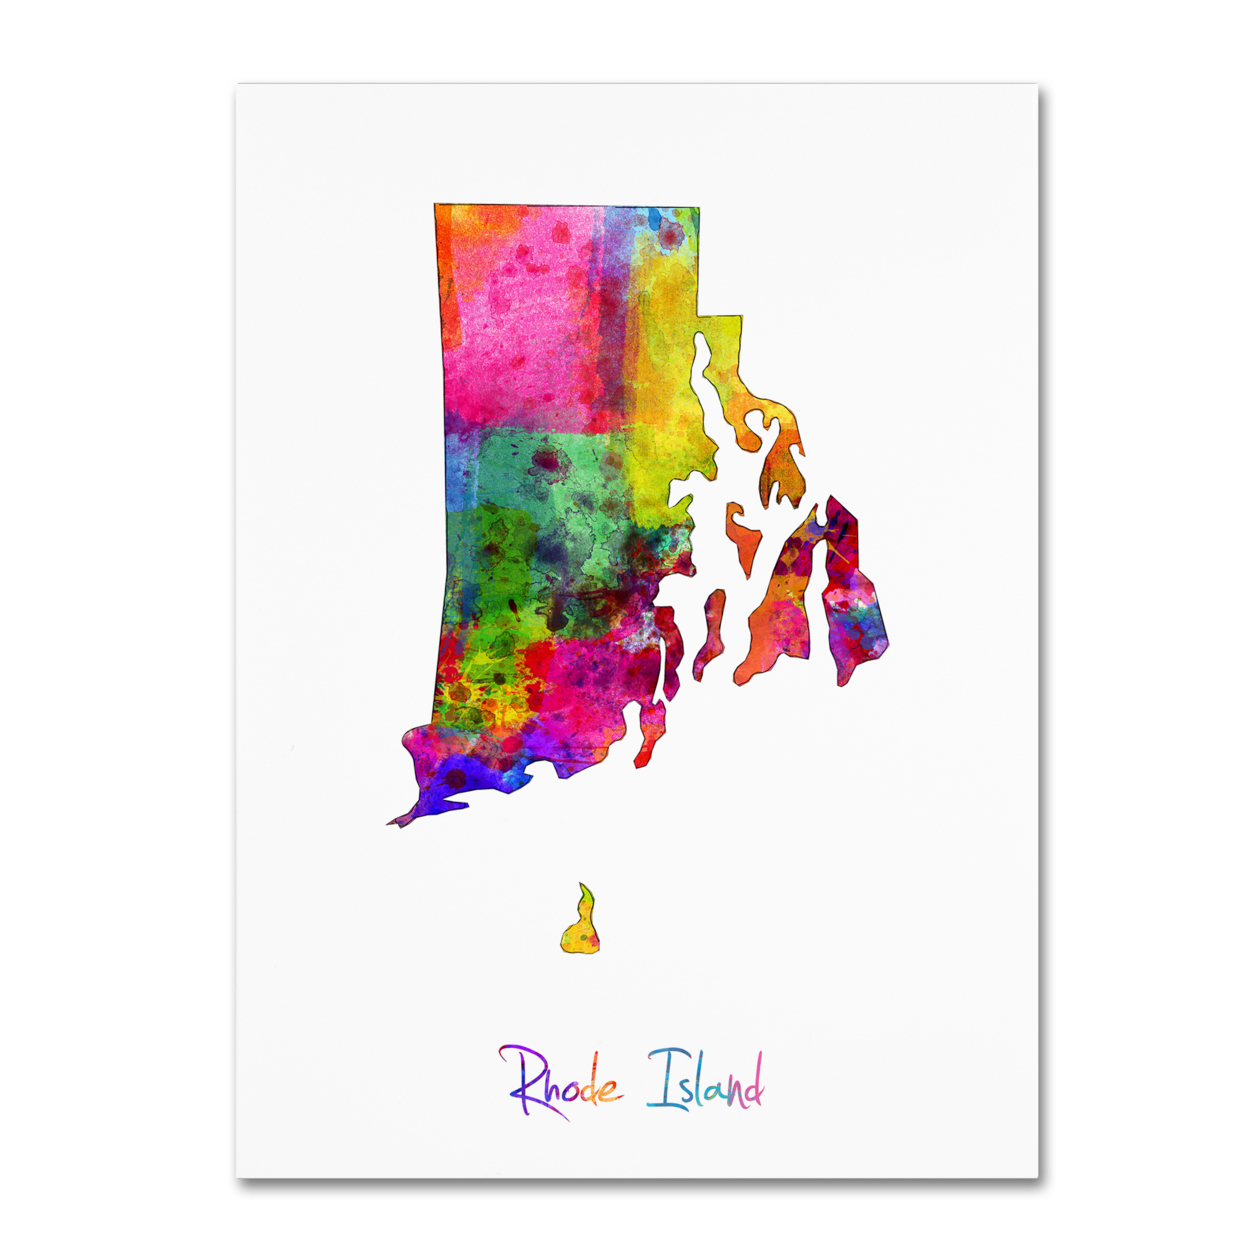 Michael Tompsett 'Rhode Island Map' Canvas Wall Art 35 X 47 Inches